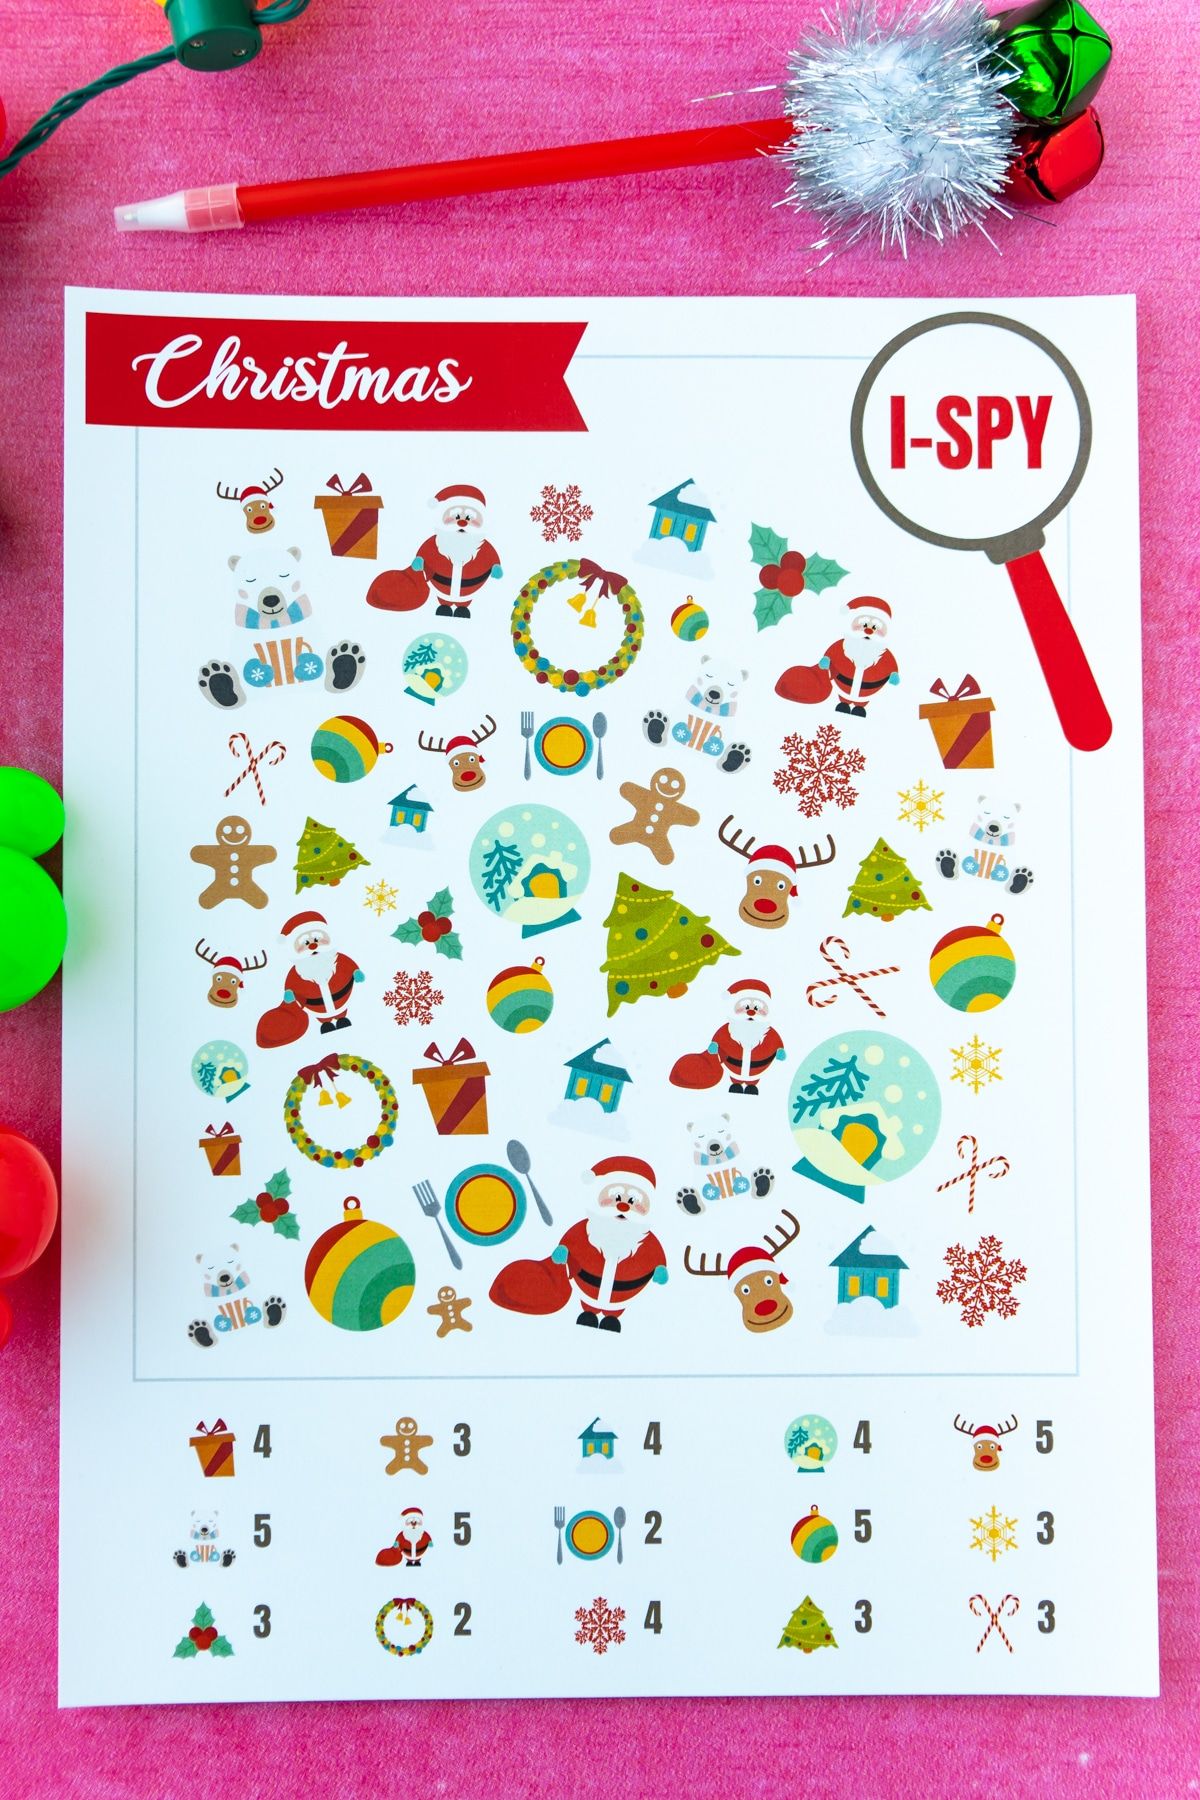 משחק i-spy של חג המולד מודפס על רקע ורוד